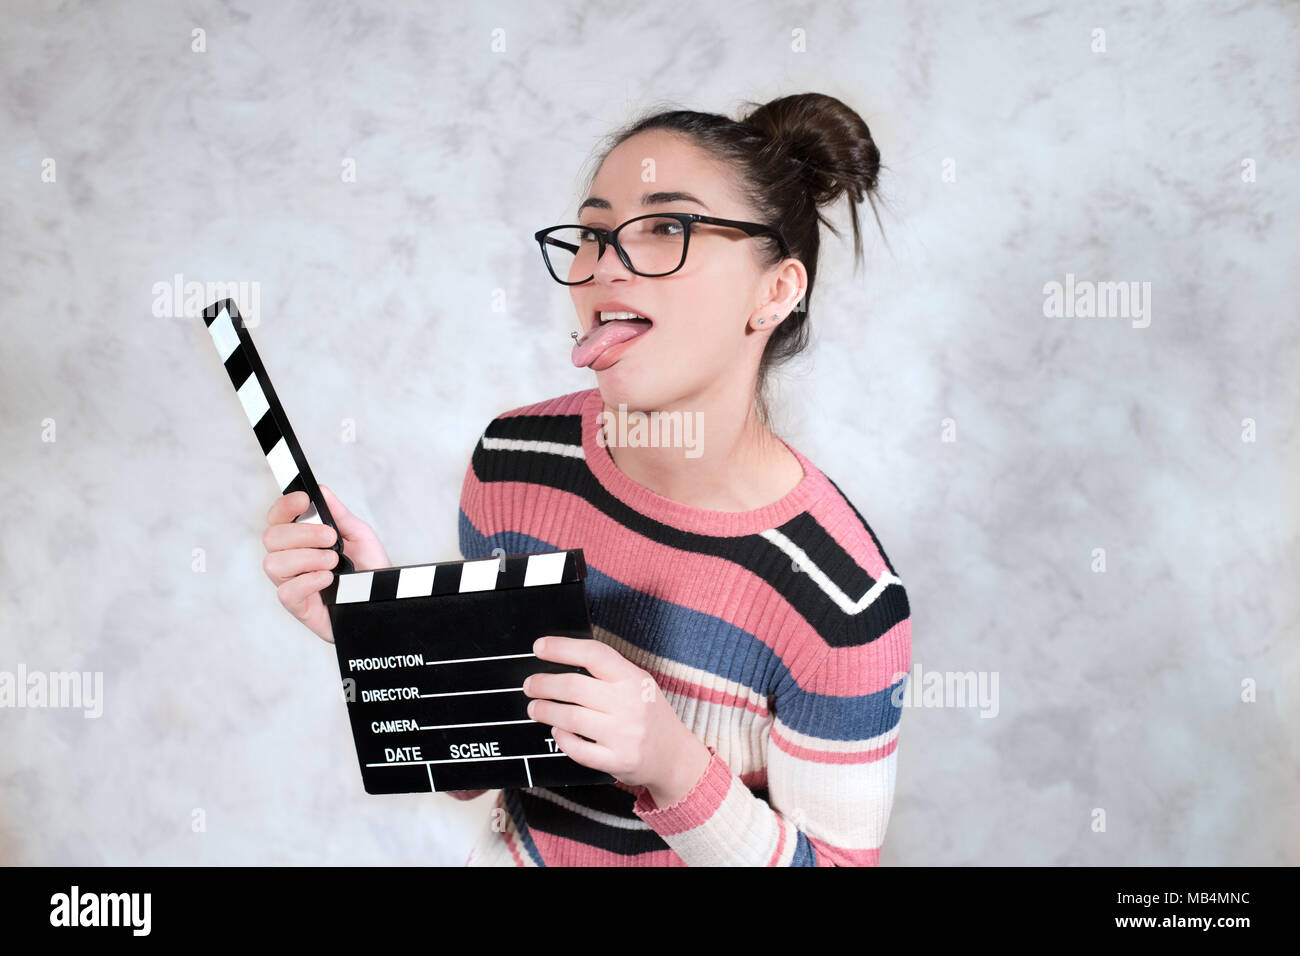 Junge Frau Schauspielerin comedy Funny Face Ausdruck Mund öffnen Mit Movie clapper board Grimasse Stockfoto